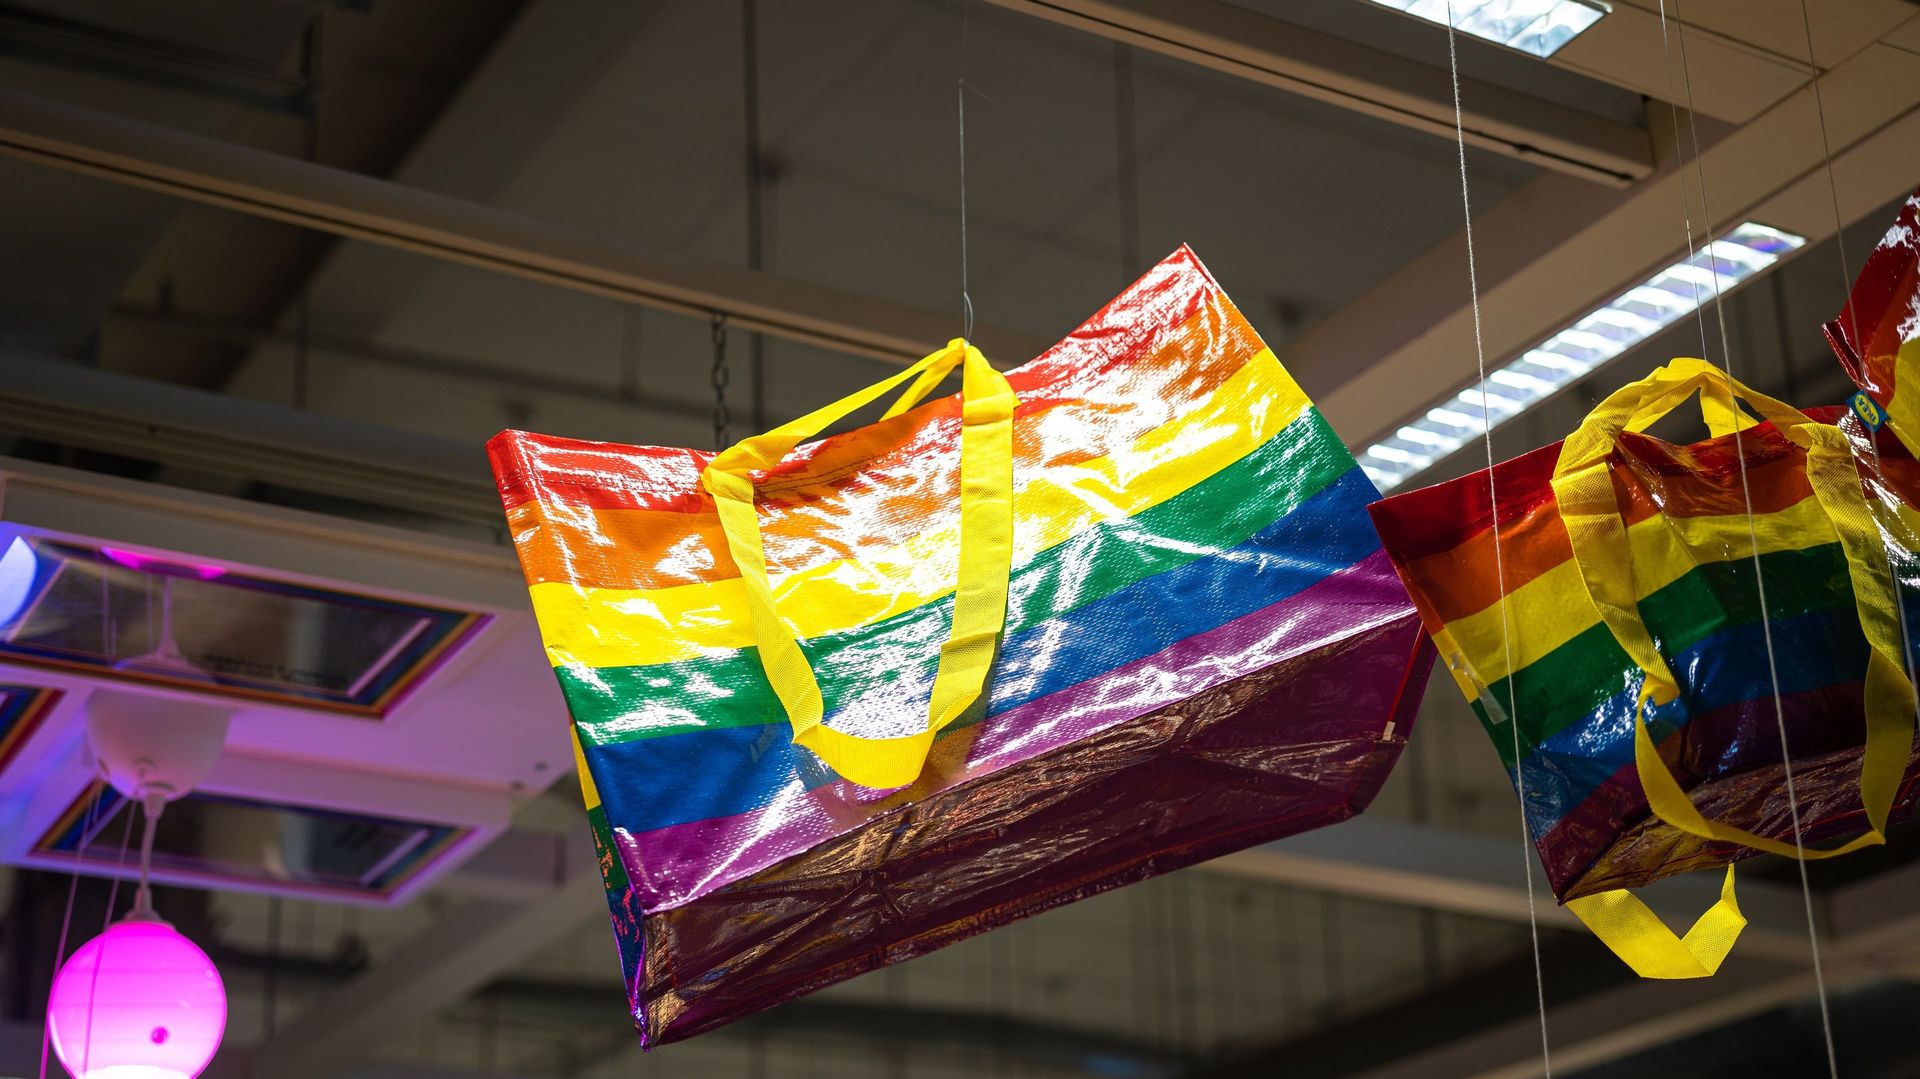 Le légendaire sac de l’enseigne IKEA qui se revêt des couleurs LGBT + pour le mois des fiertés.